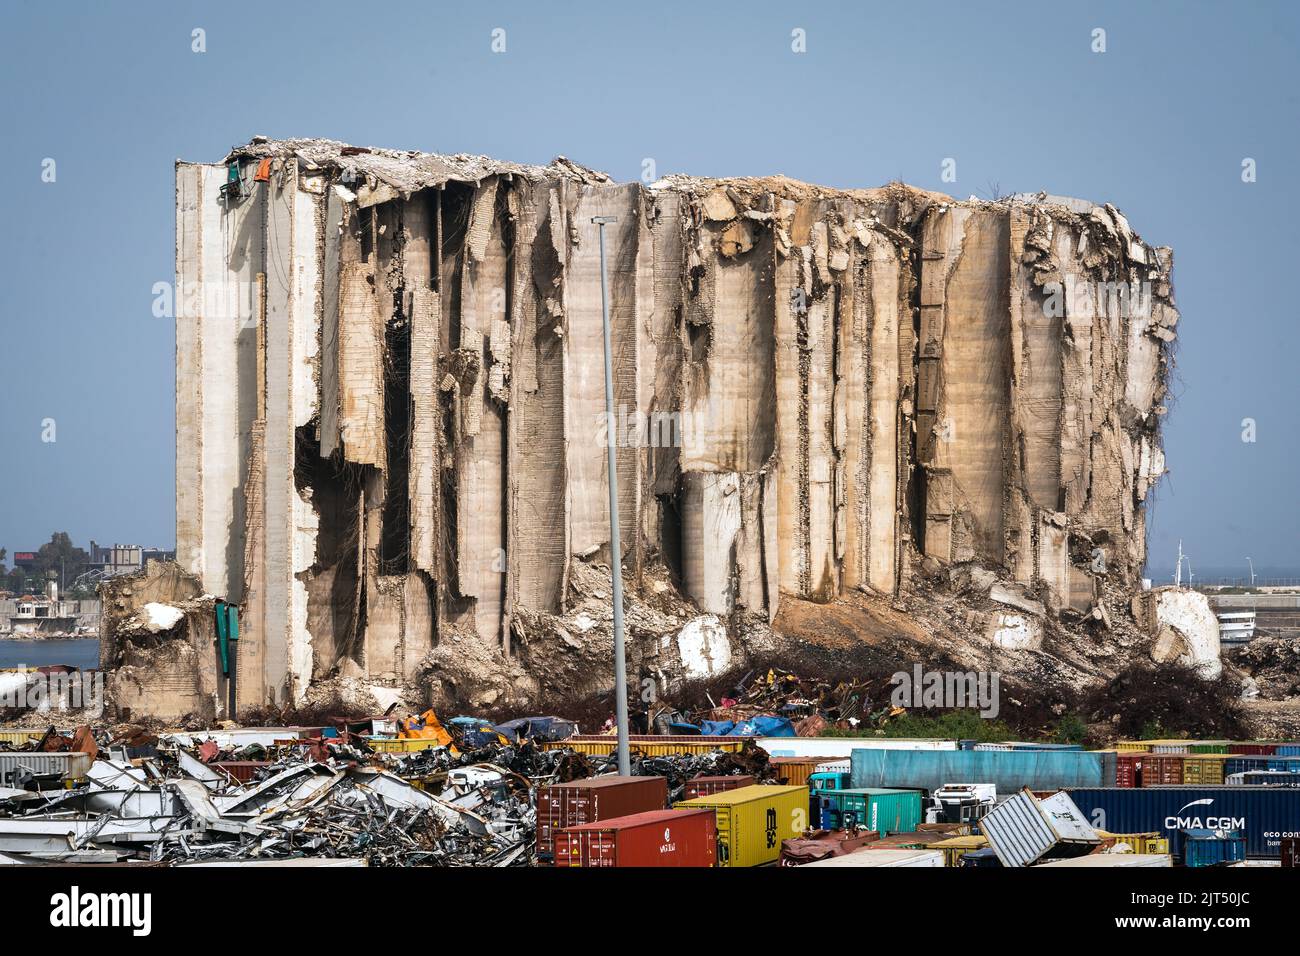 Beirut, Líbano: Silos de granos destruidos detrás de grúas y escombros debido a la explosión masiva de 2.750 toneladas de nitrato de amonio almacenadas en el puerto de la ciudad el 8/4/2020 Foto de stock